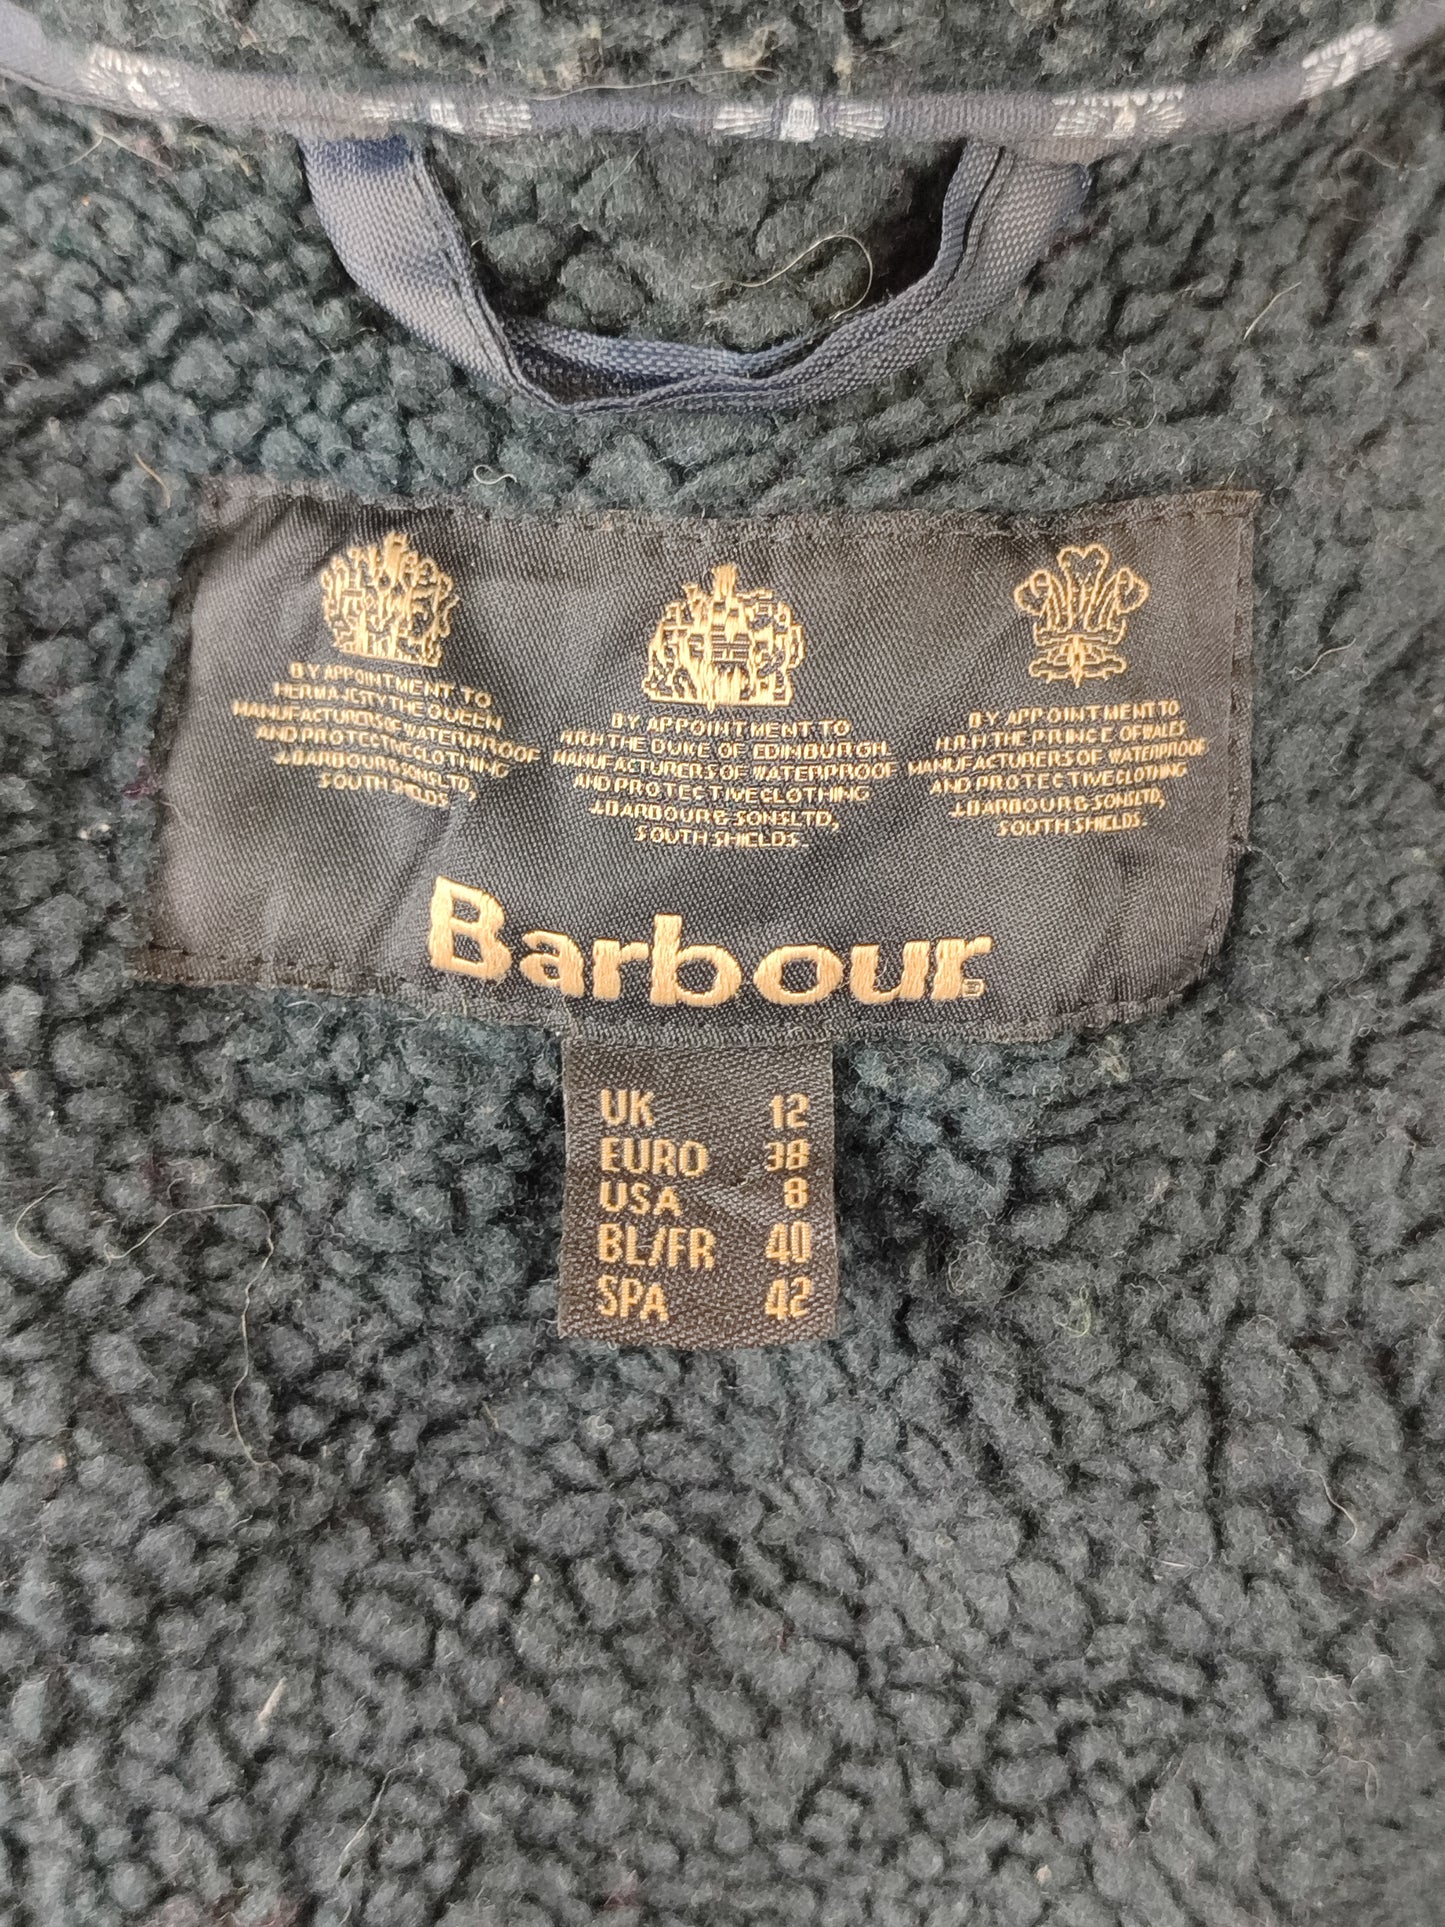 Giacca Barbour blu imbottito da donna UK12 Medium -Lady Navy wax Bridport coat size UK12